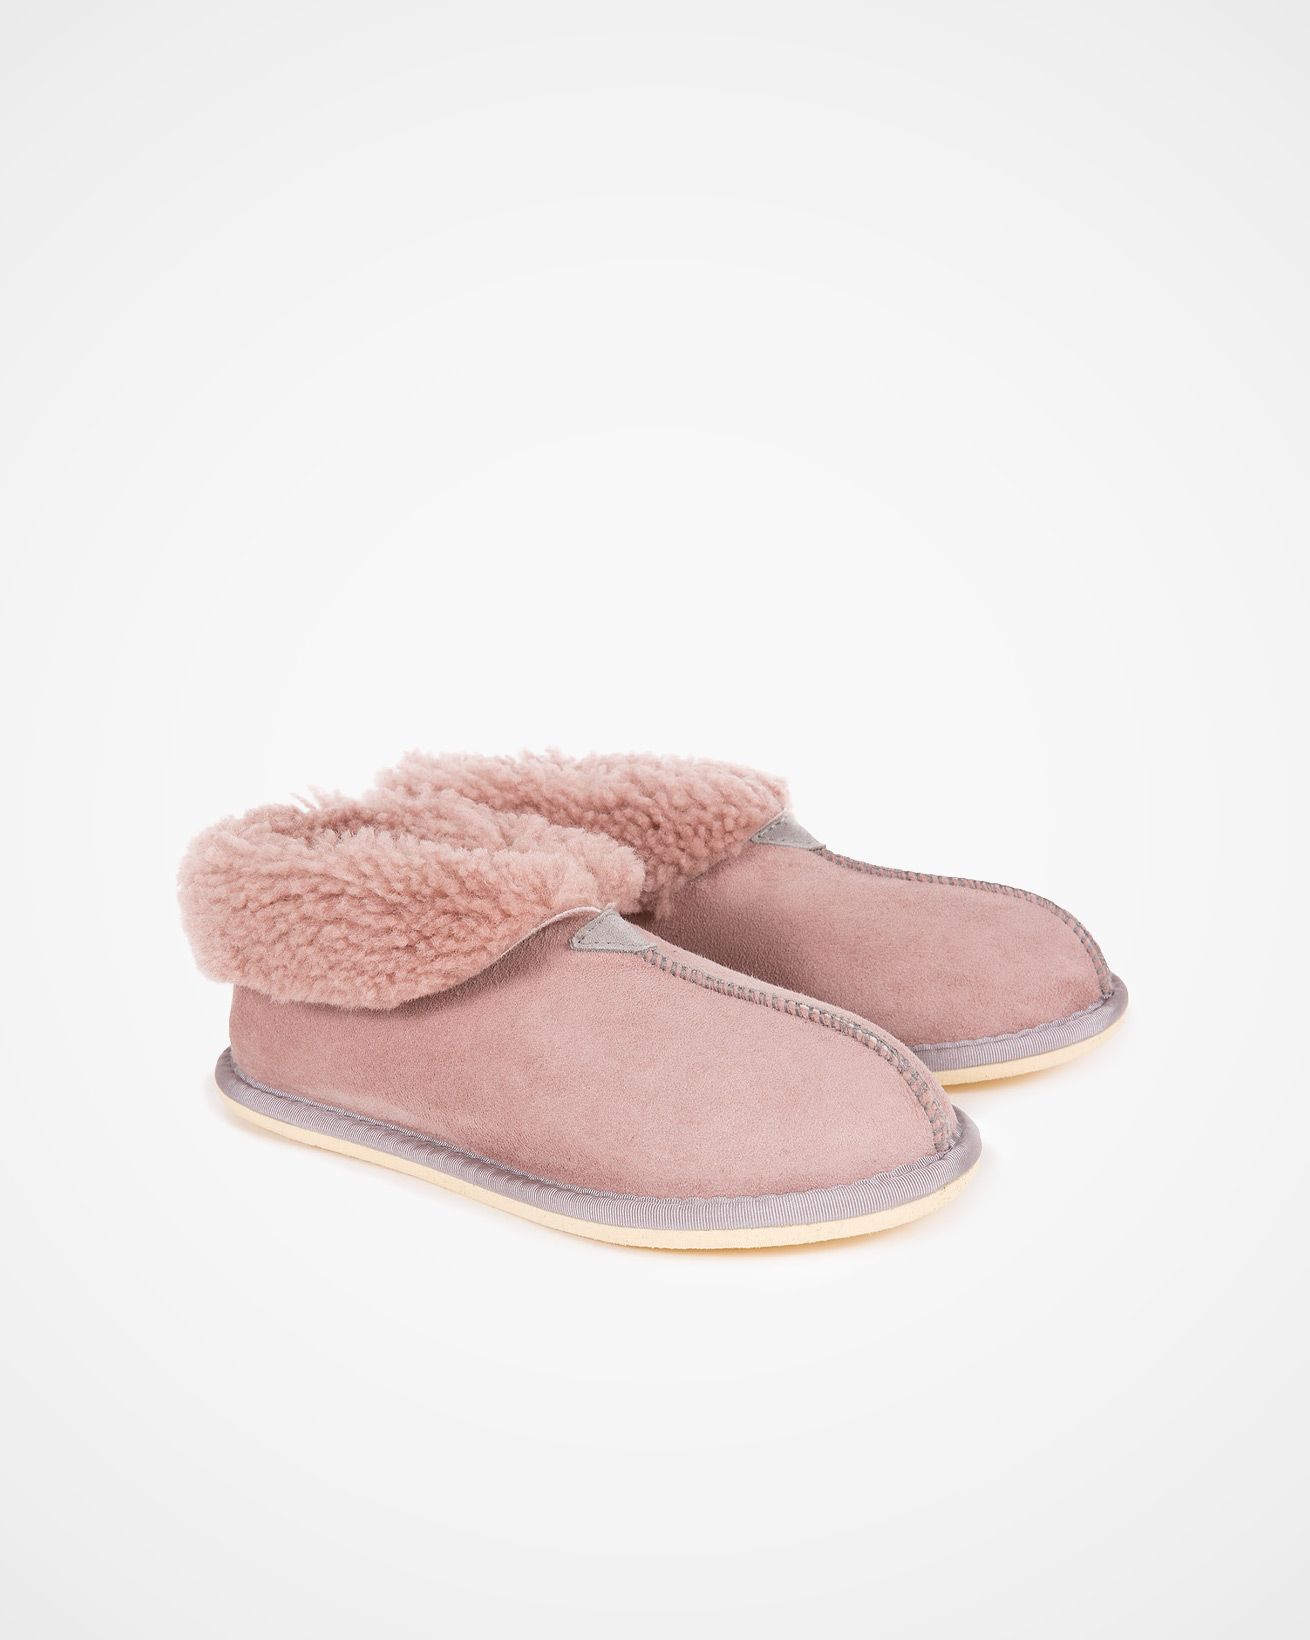 2100_ladies-sheepskin-bootee-slippers_dusty-pink_pair.jpg